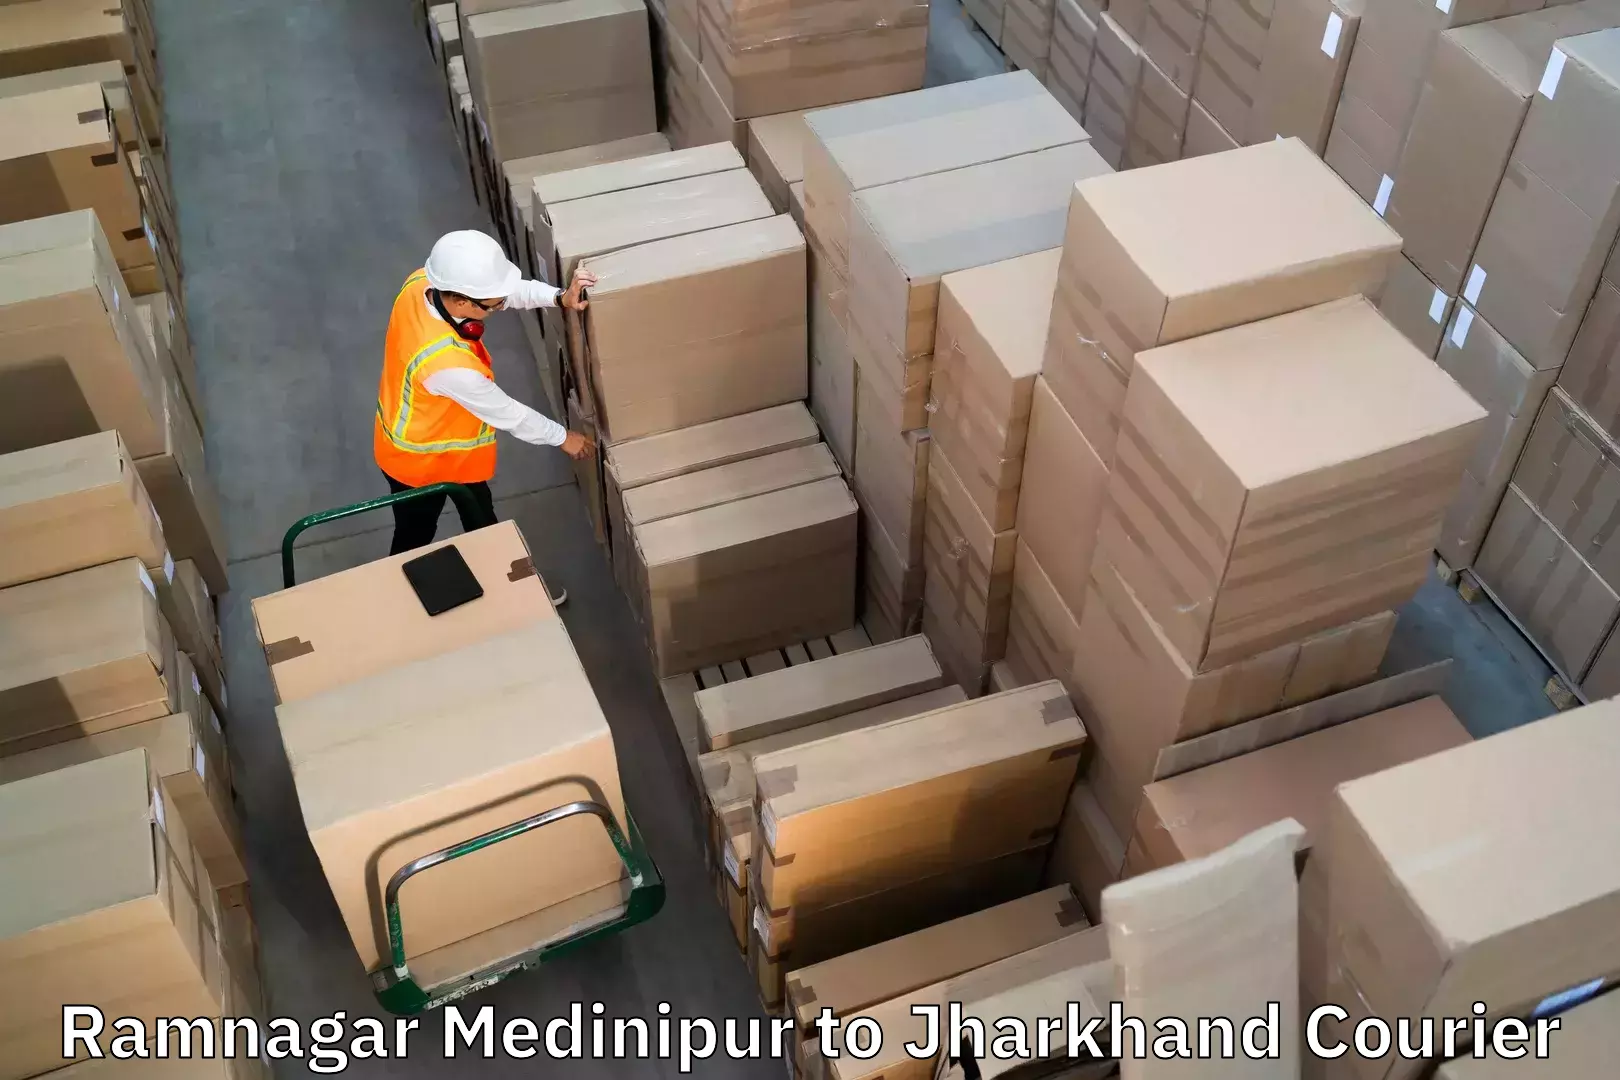 Quick luggage shipment in Ramnagar Medinipur to Godabar Chatra